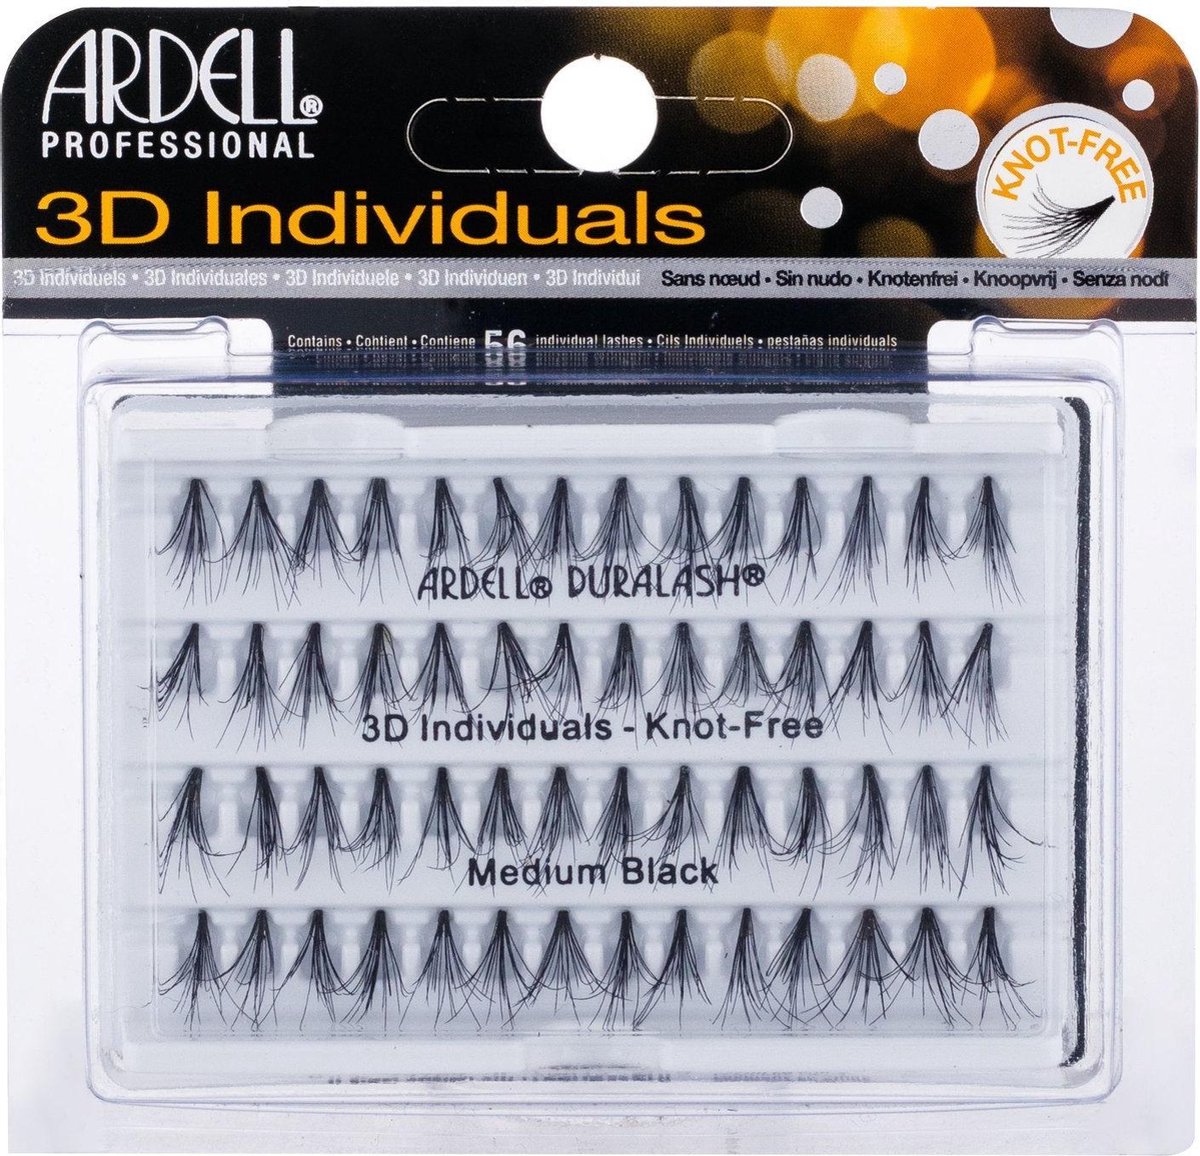 Ardell - 3D Individuals Duralash Knot-Free - Umělé řasy Medium Black - 56.0ks